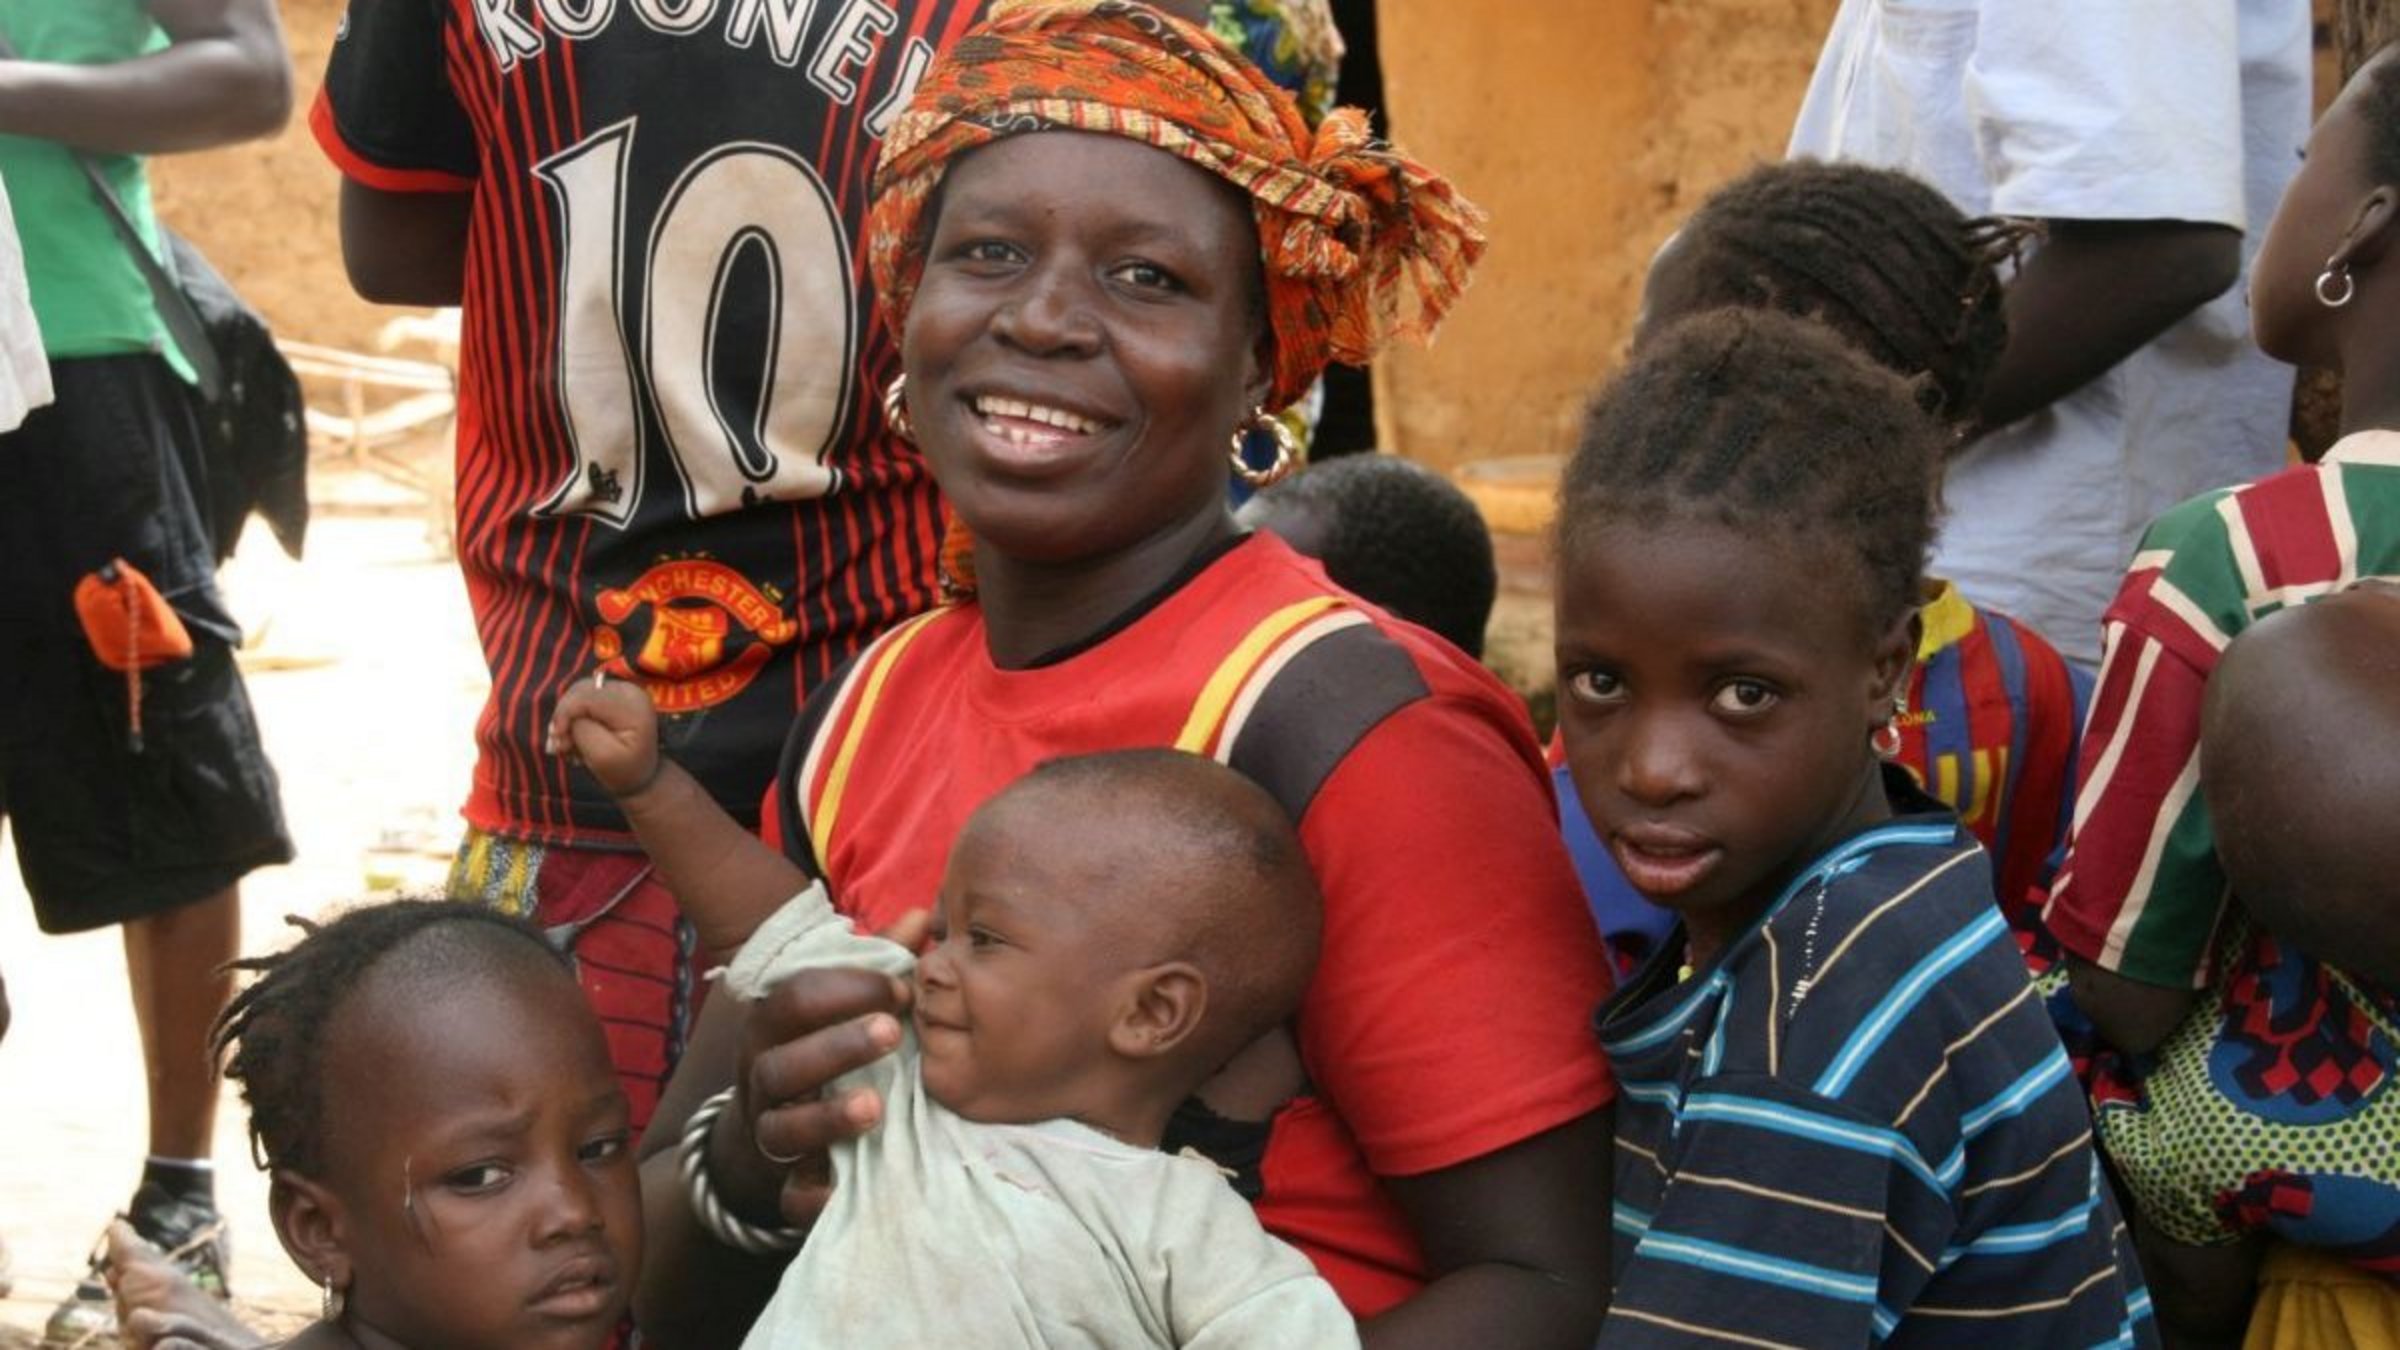 Gesundheit verbessern in Burkina Faso